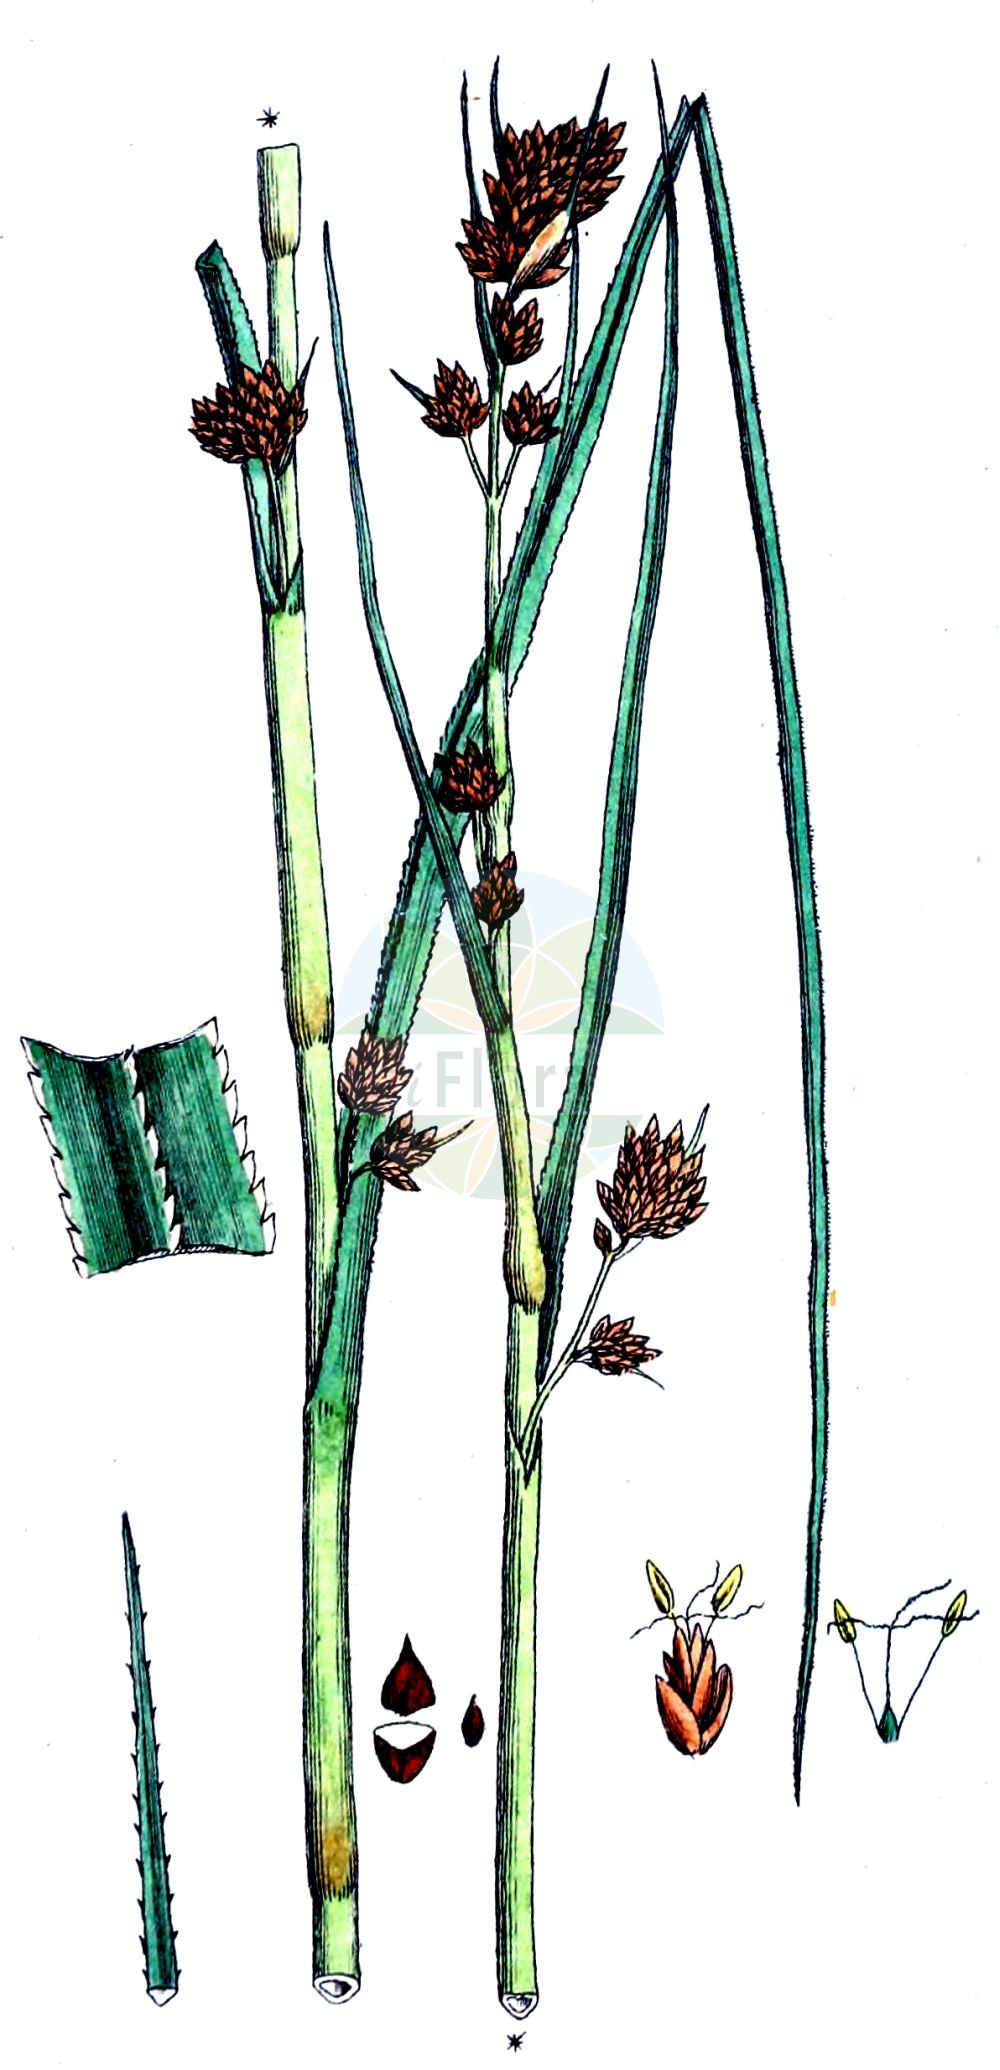 Historische Abbildung von Cladium mariscus (Binsenschneide - Great Fen-Sedge). Das Bild zeigt Blatt, Bluete, Frucht und Same. ---- Historical Drawing of Cladium mariscus (Binsenschneide - Great Fen-Sedge). The image is showing leaf, flower, fruit and seed.(Cladium mariscus,Binsenschneide,Great Fen-Sedge,Cladium grossheimii,Cladium mariscus,Isolepis martii,Schoenus mariscus,Binsenschneide,Binsen-Schneide,Great Fen-Sedge,Cut-Sedge,Swamp Sawgrass,Galigaan,Smooth Sawgrass,Twig Rush,Cladium,Schneide,Cut-Sedge,Cyperaceae,Sauergräser,Sedge family,Blatt,Bluete,Frucht,Same,leaf,flower,fruit,seed,Svensk Botanik (Svensk Botanik))